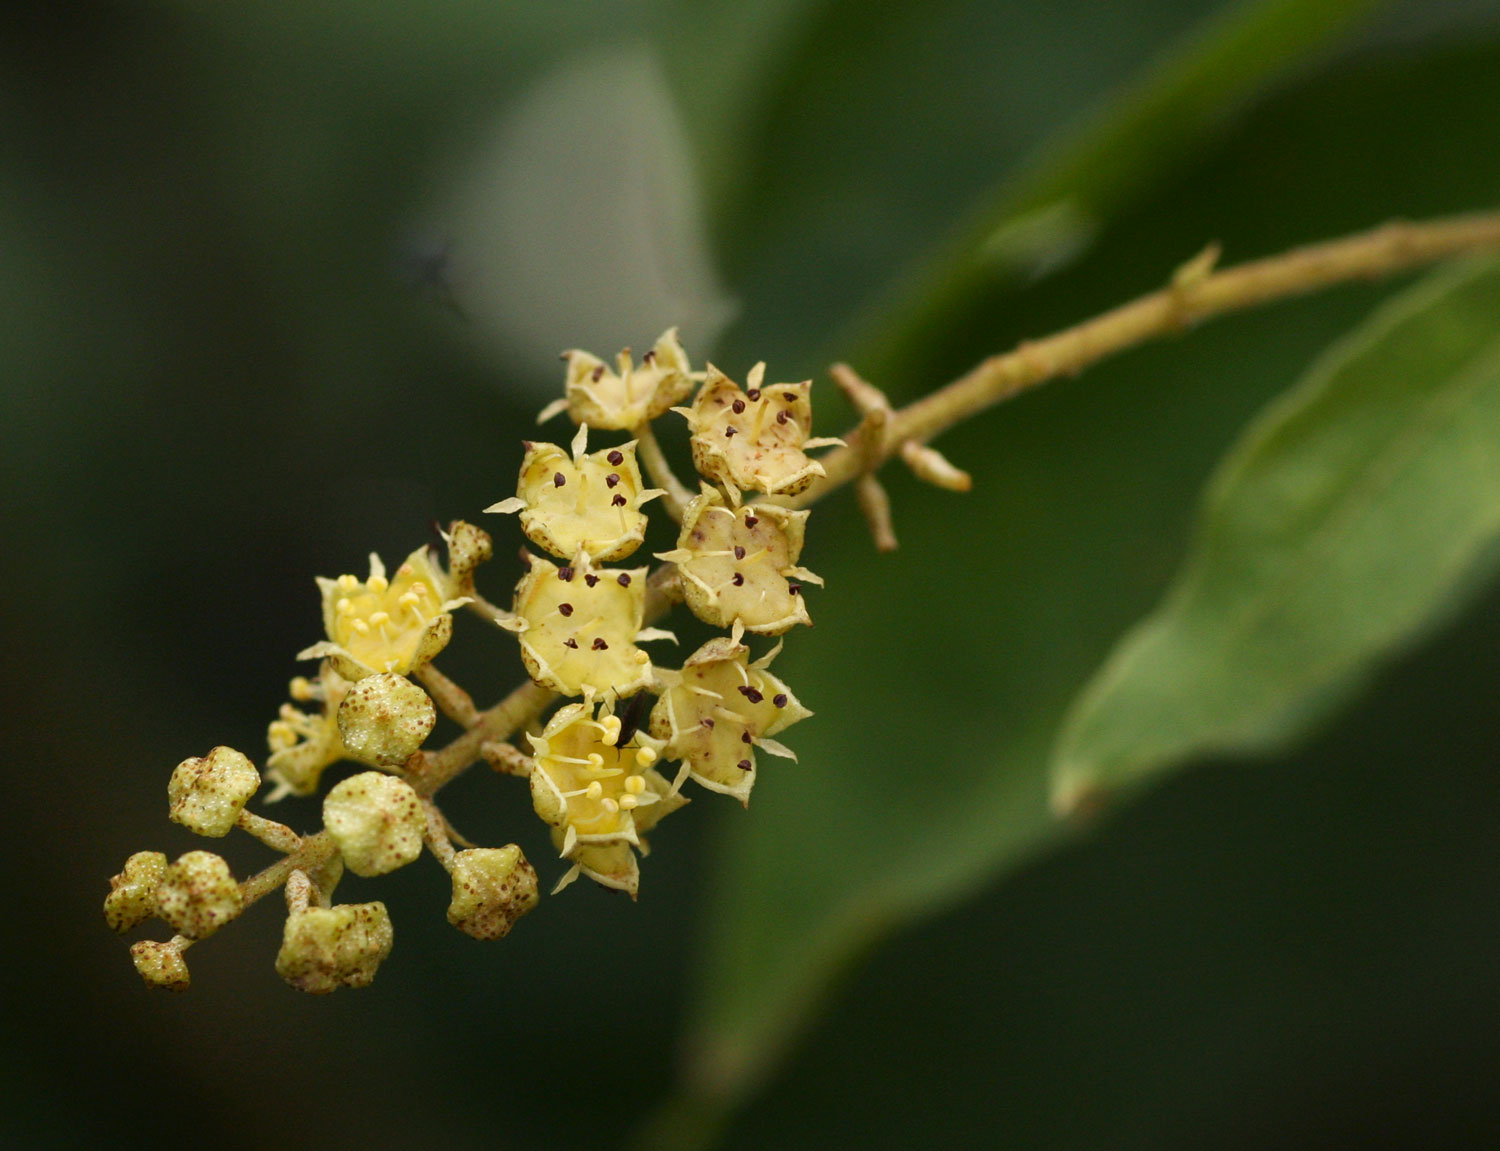 Combretum celastroides subsp. celastroides